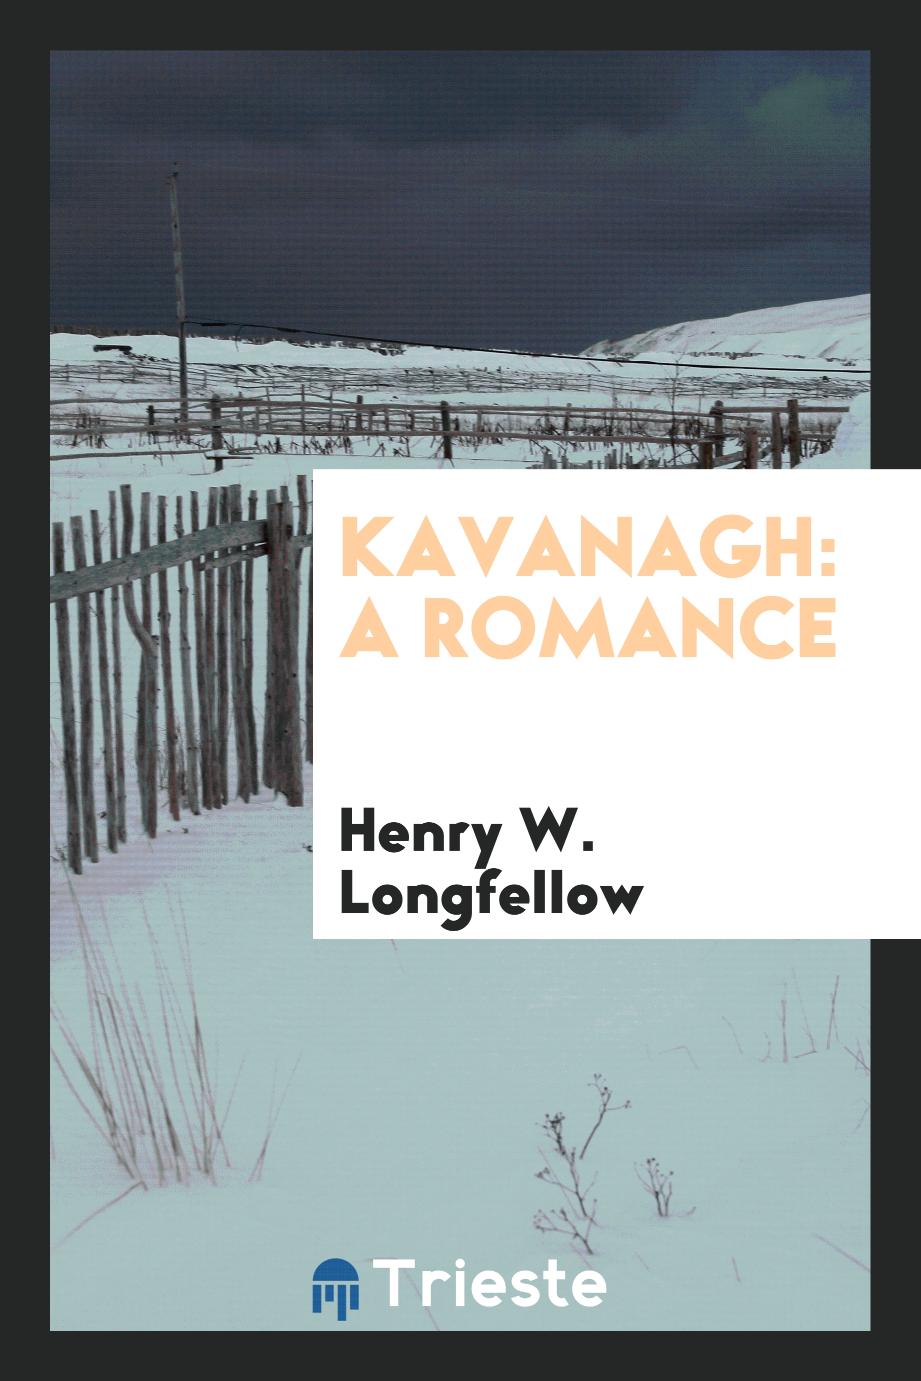 Kavanagh: a romance